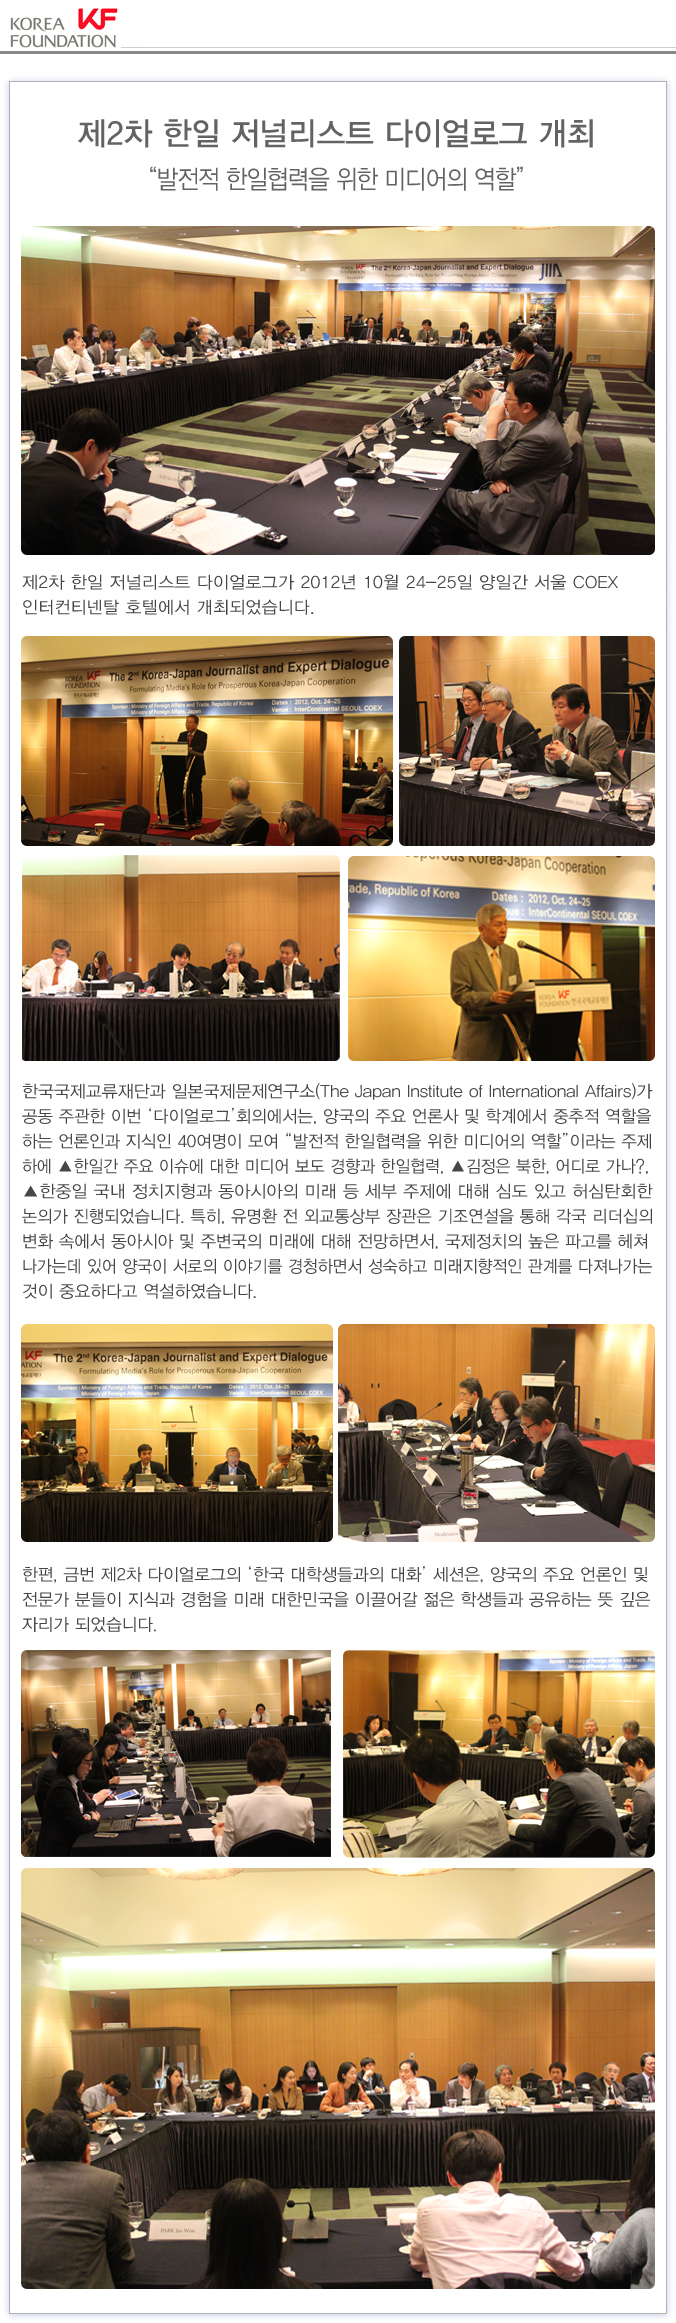 제2차 한일 저널리스트 다이얼로그 개최